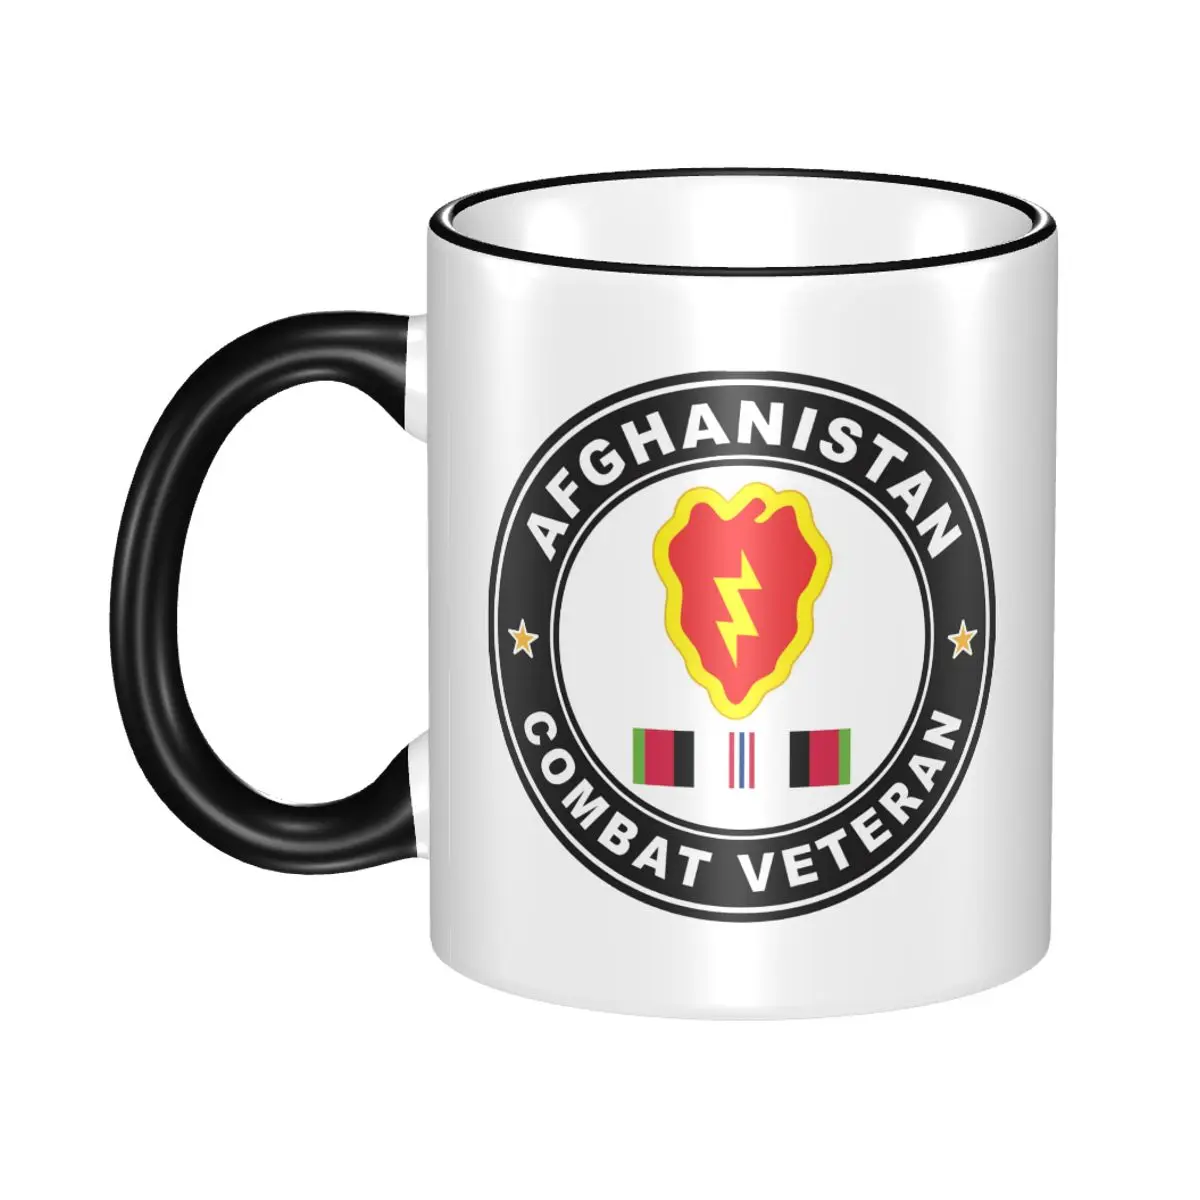 

25-е пехотное подразделение Афганистана Боевая Ветеран пивная чашка фарфоровая кофейная чашка чайная чашка 11 унций керамические кружки